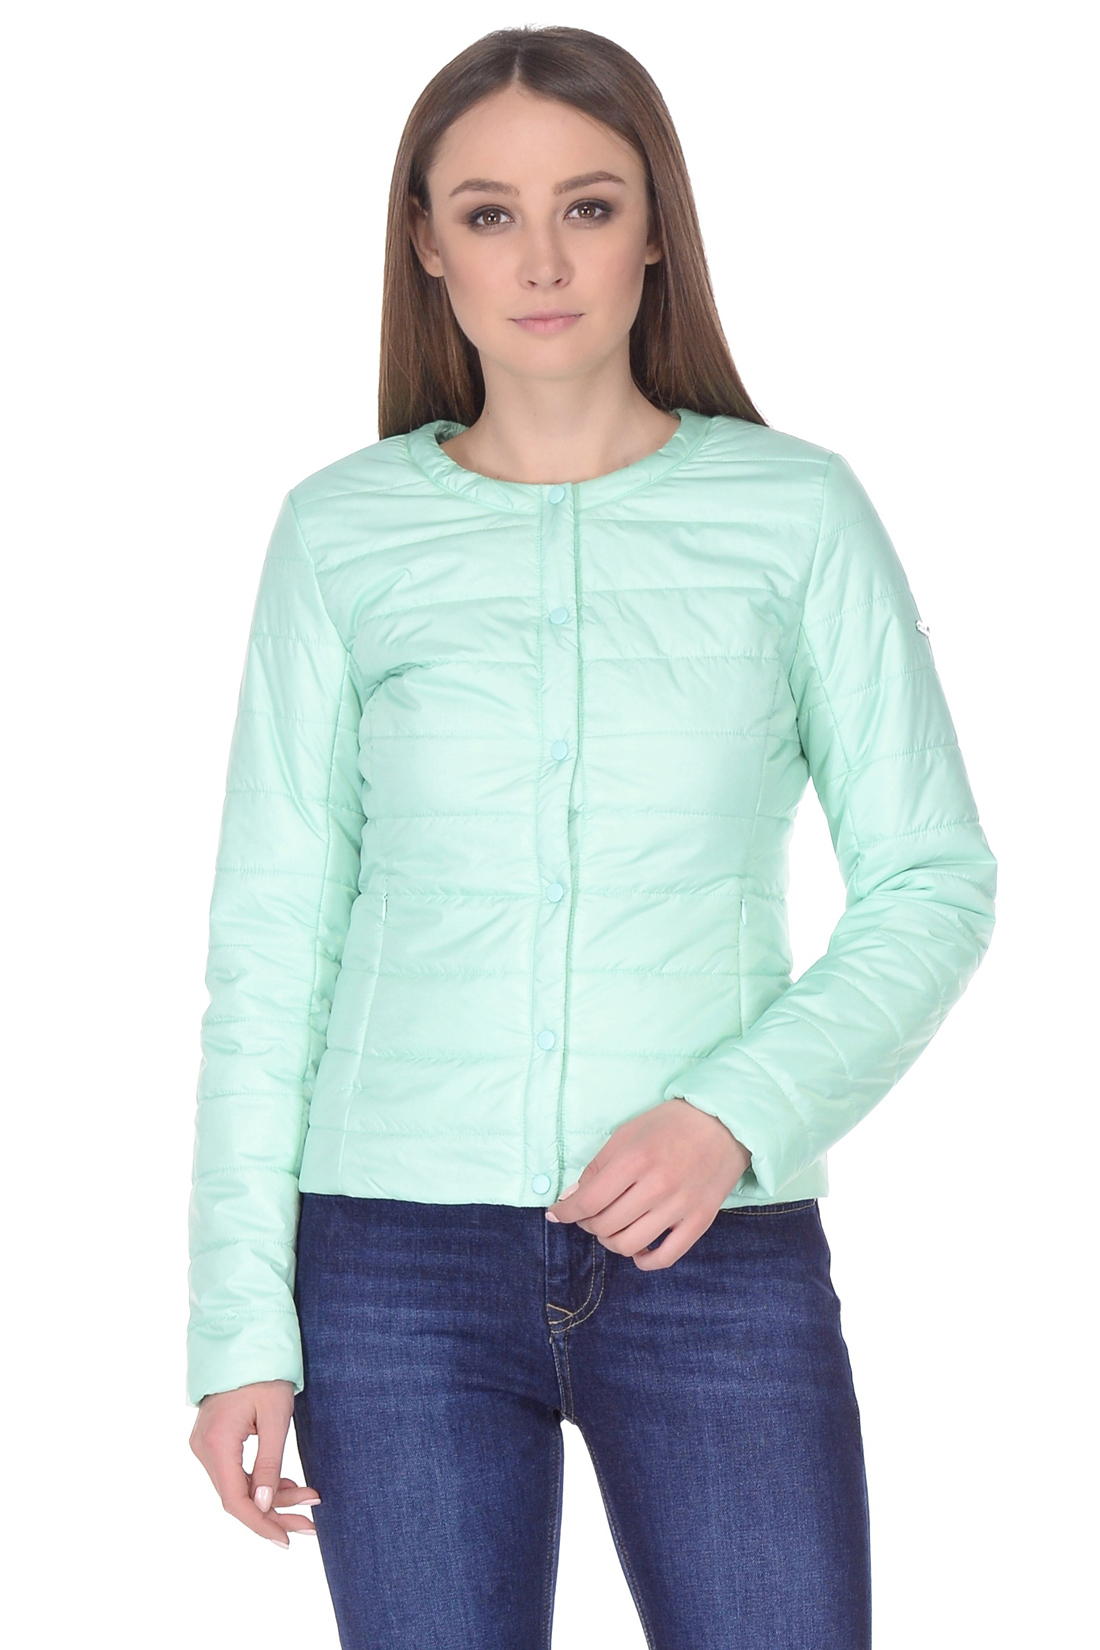 Базовая куртка на кнопках (арт. baon B038203), размер XS, цвет зеленый Базовая куртка на кнопках (арт. baon B038203) - фото 1